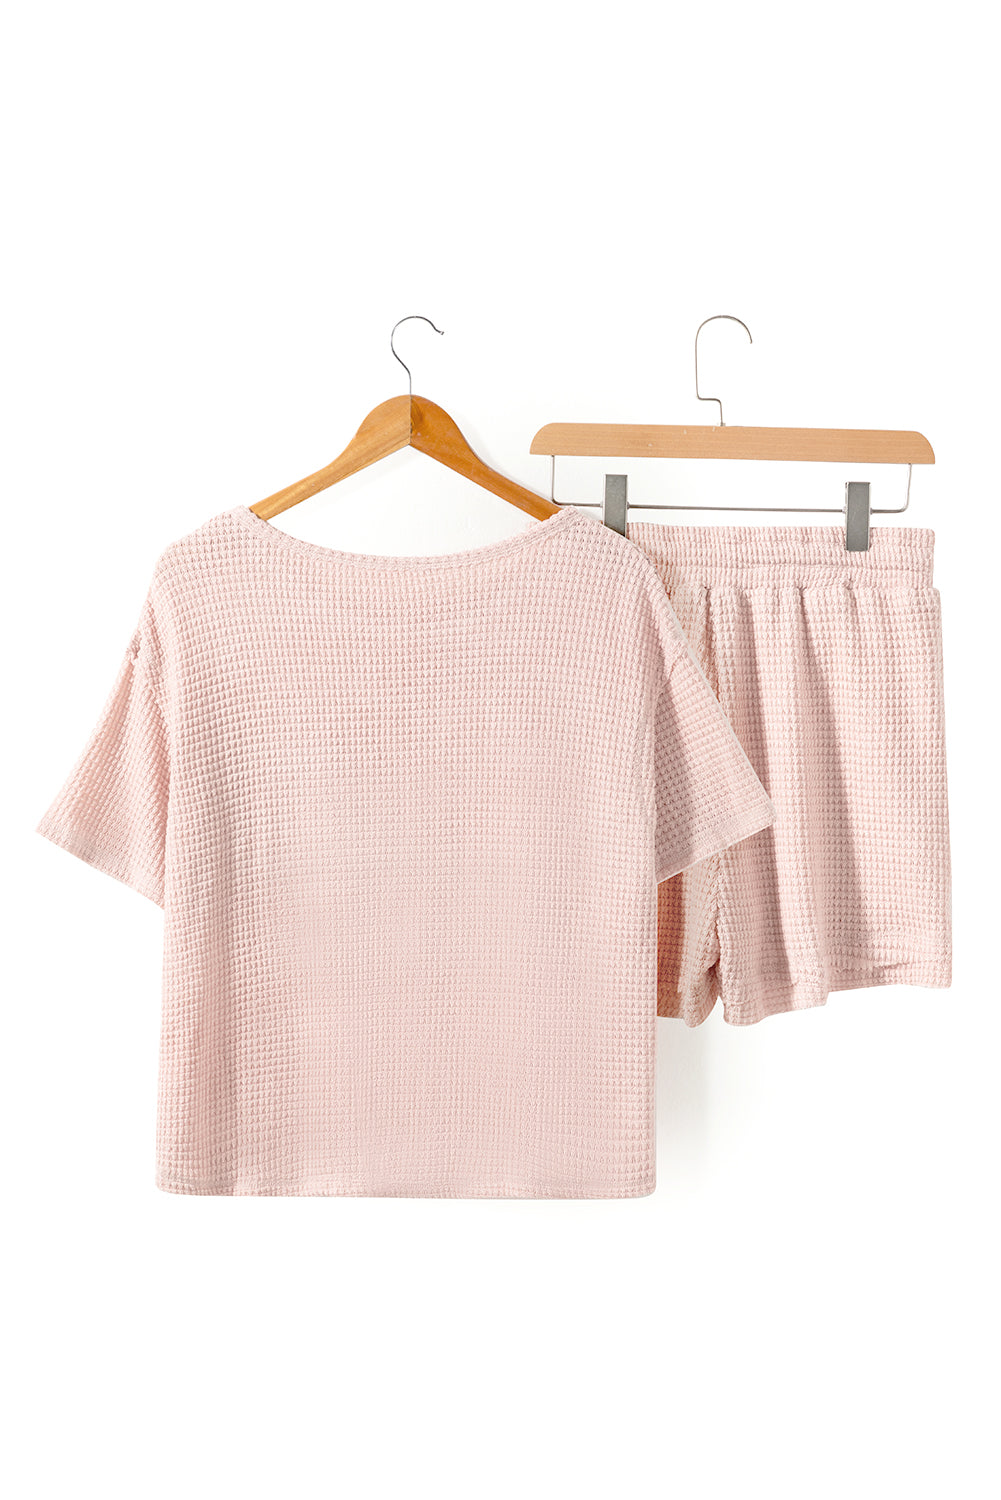 Ensemble t-shirt et short en tricot gaufré rose abricot à manches courtes